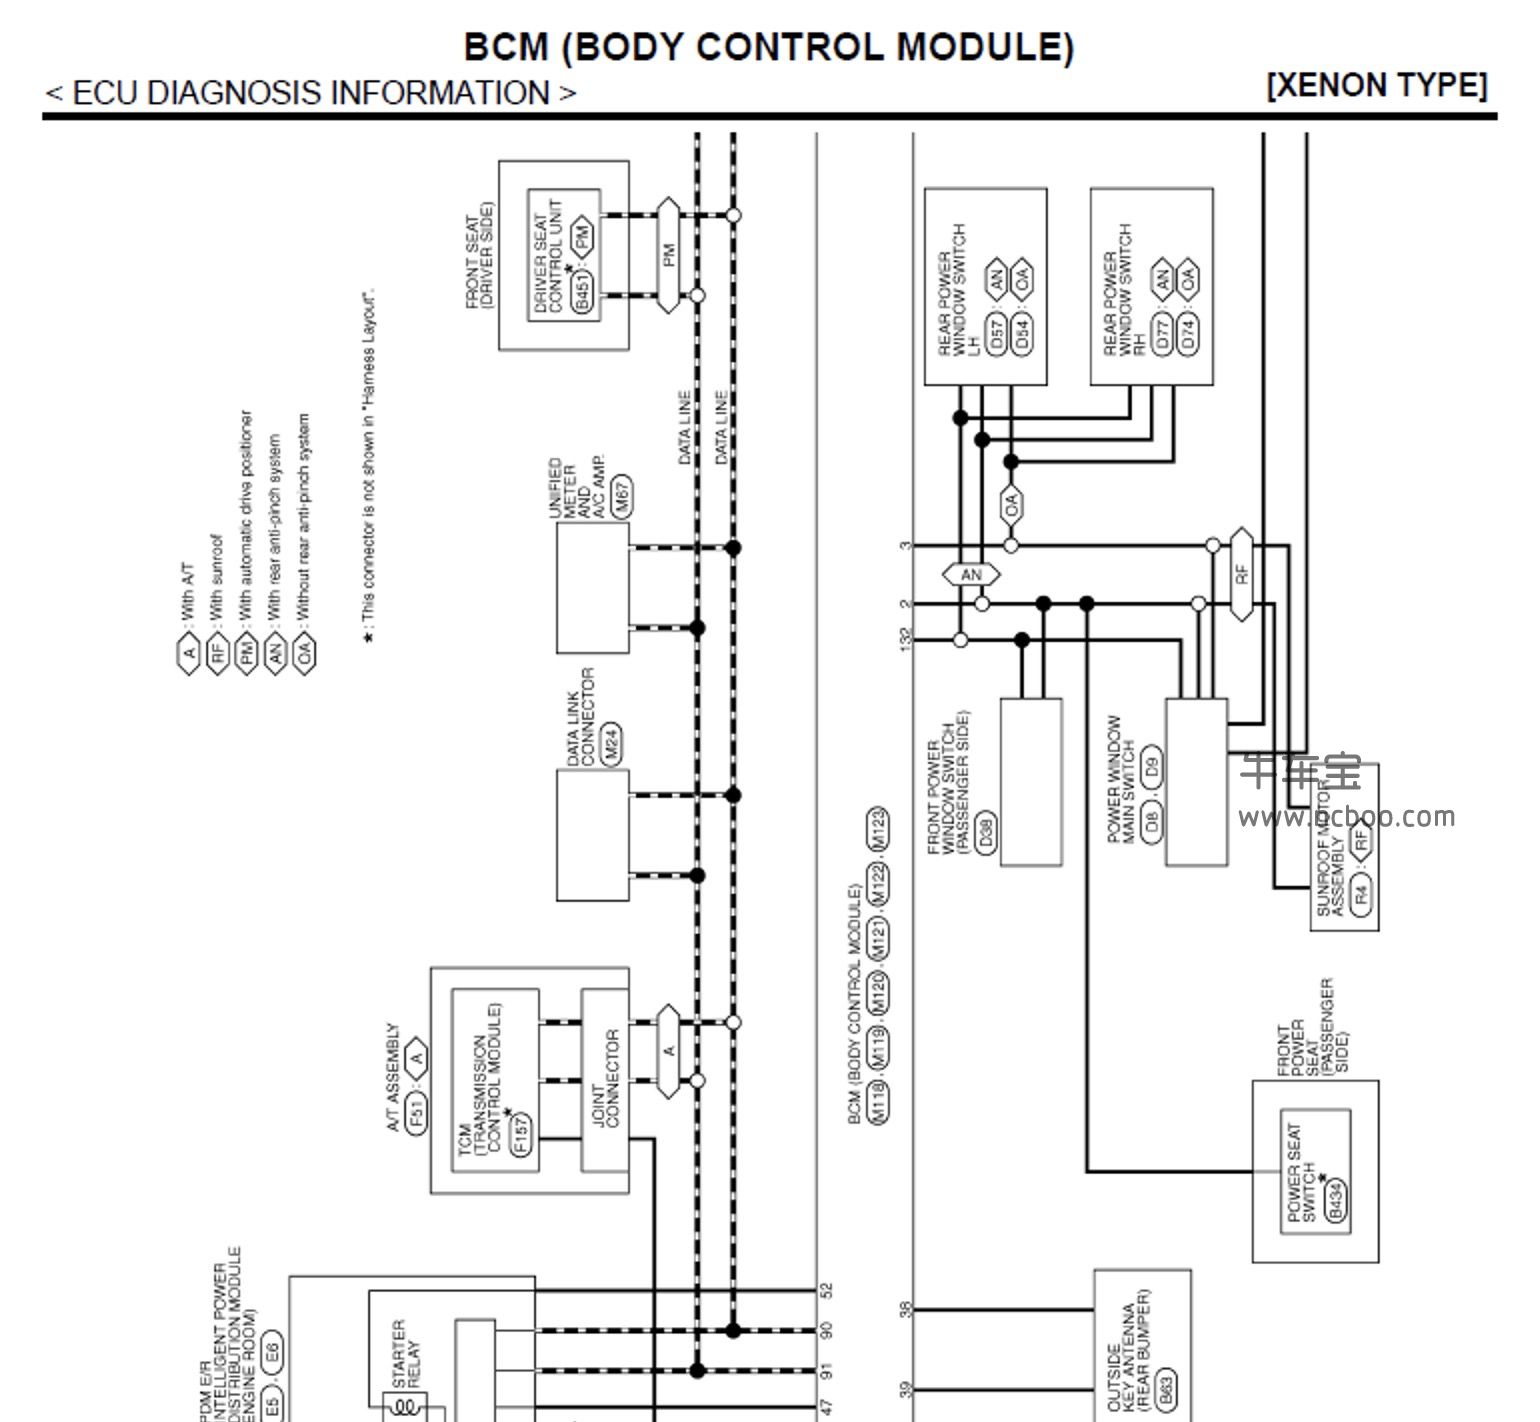 2012款英菲尼迪G35 G37原厂维修手册含电路图下载[英文]